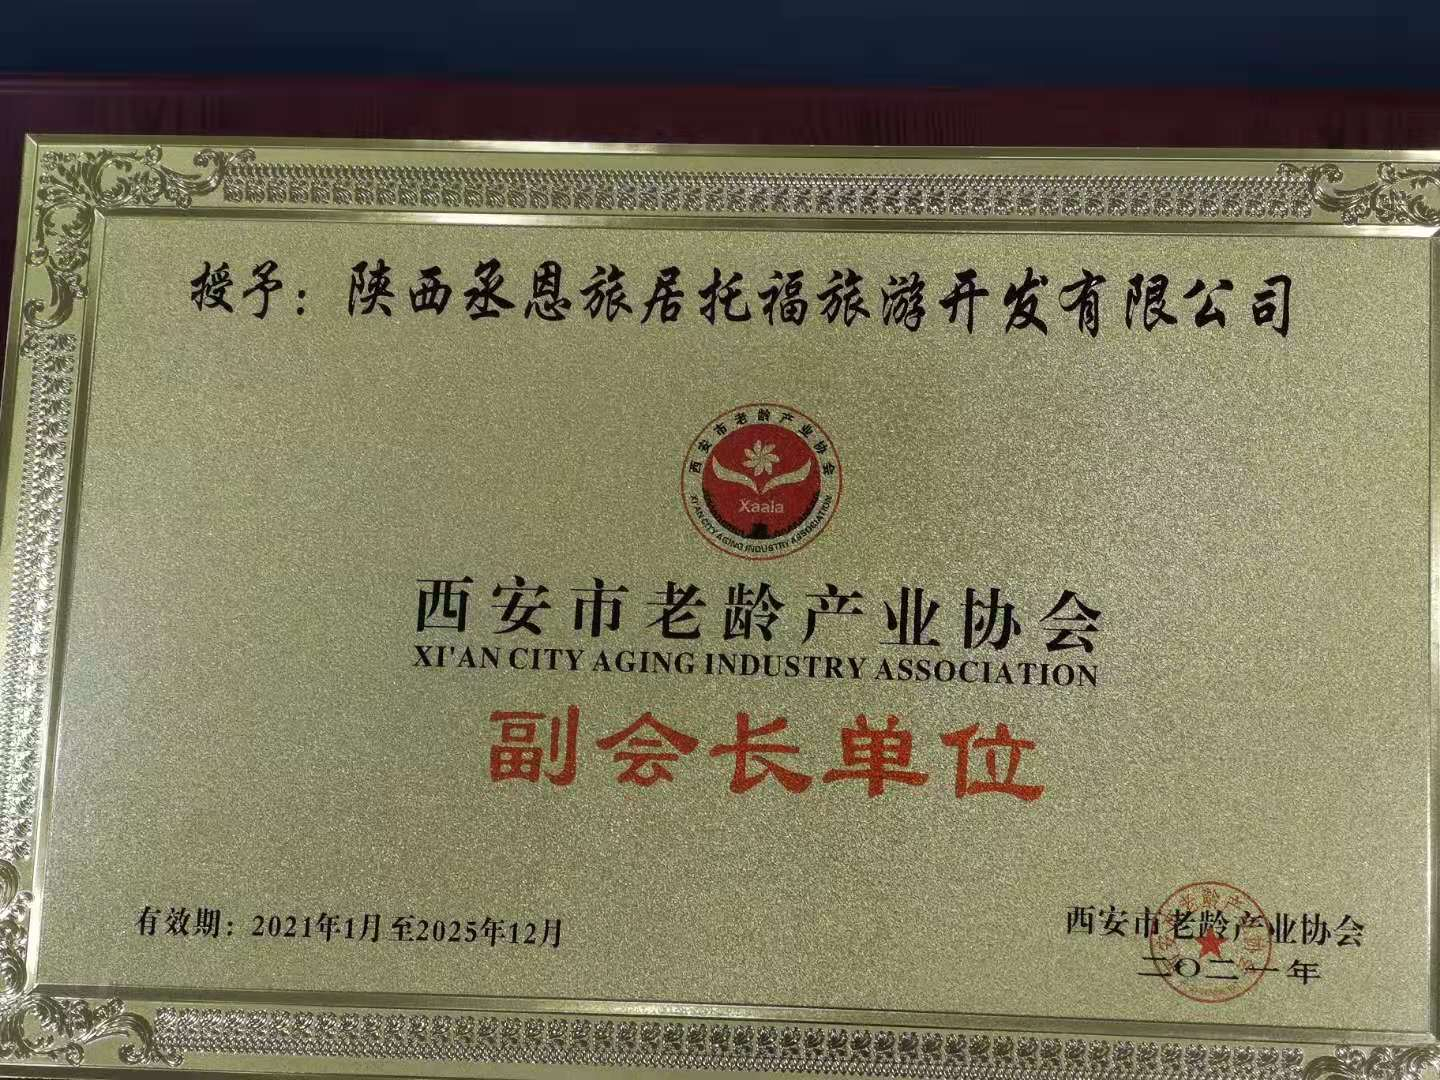 丞恩旅居托福旅游公司被西安市老龄产业协会吸纳为副会长单位